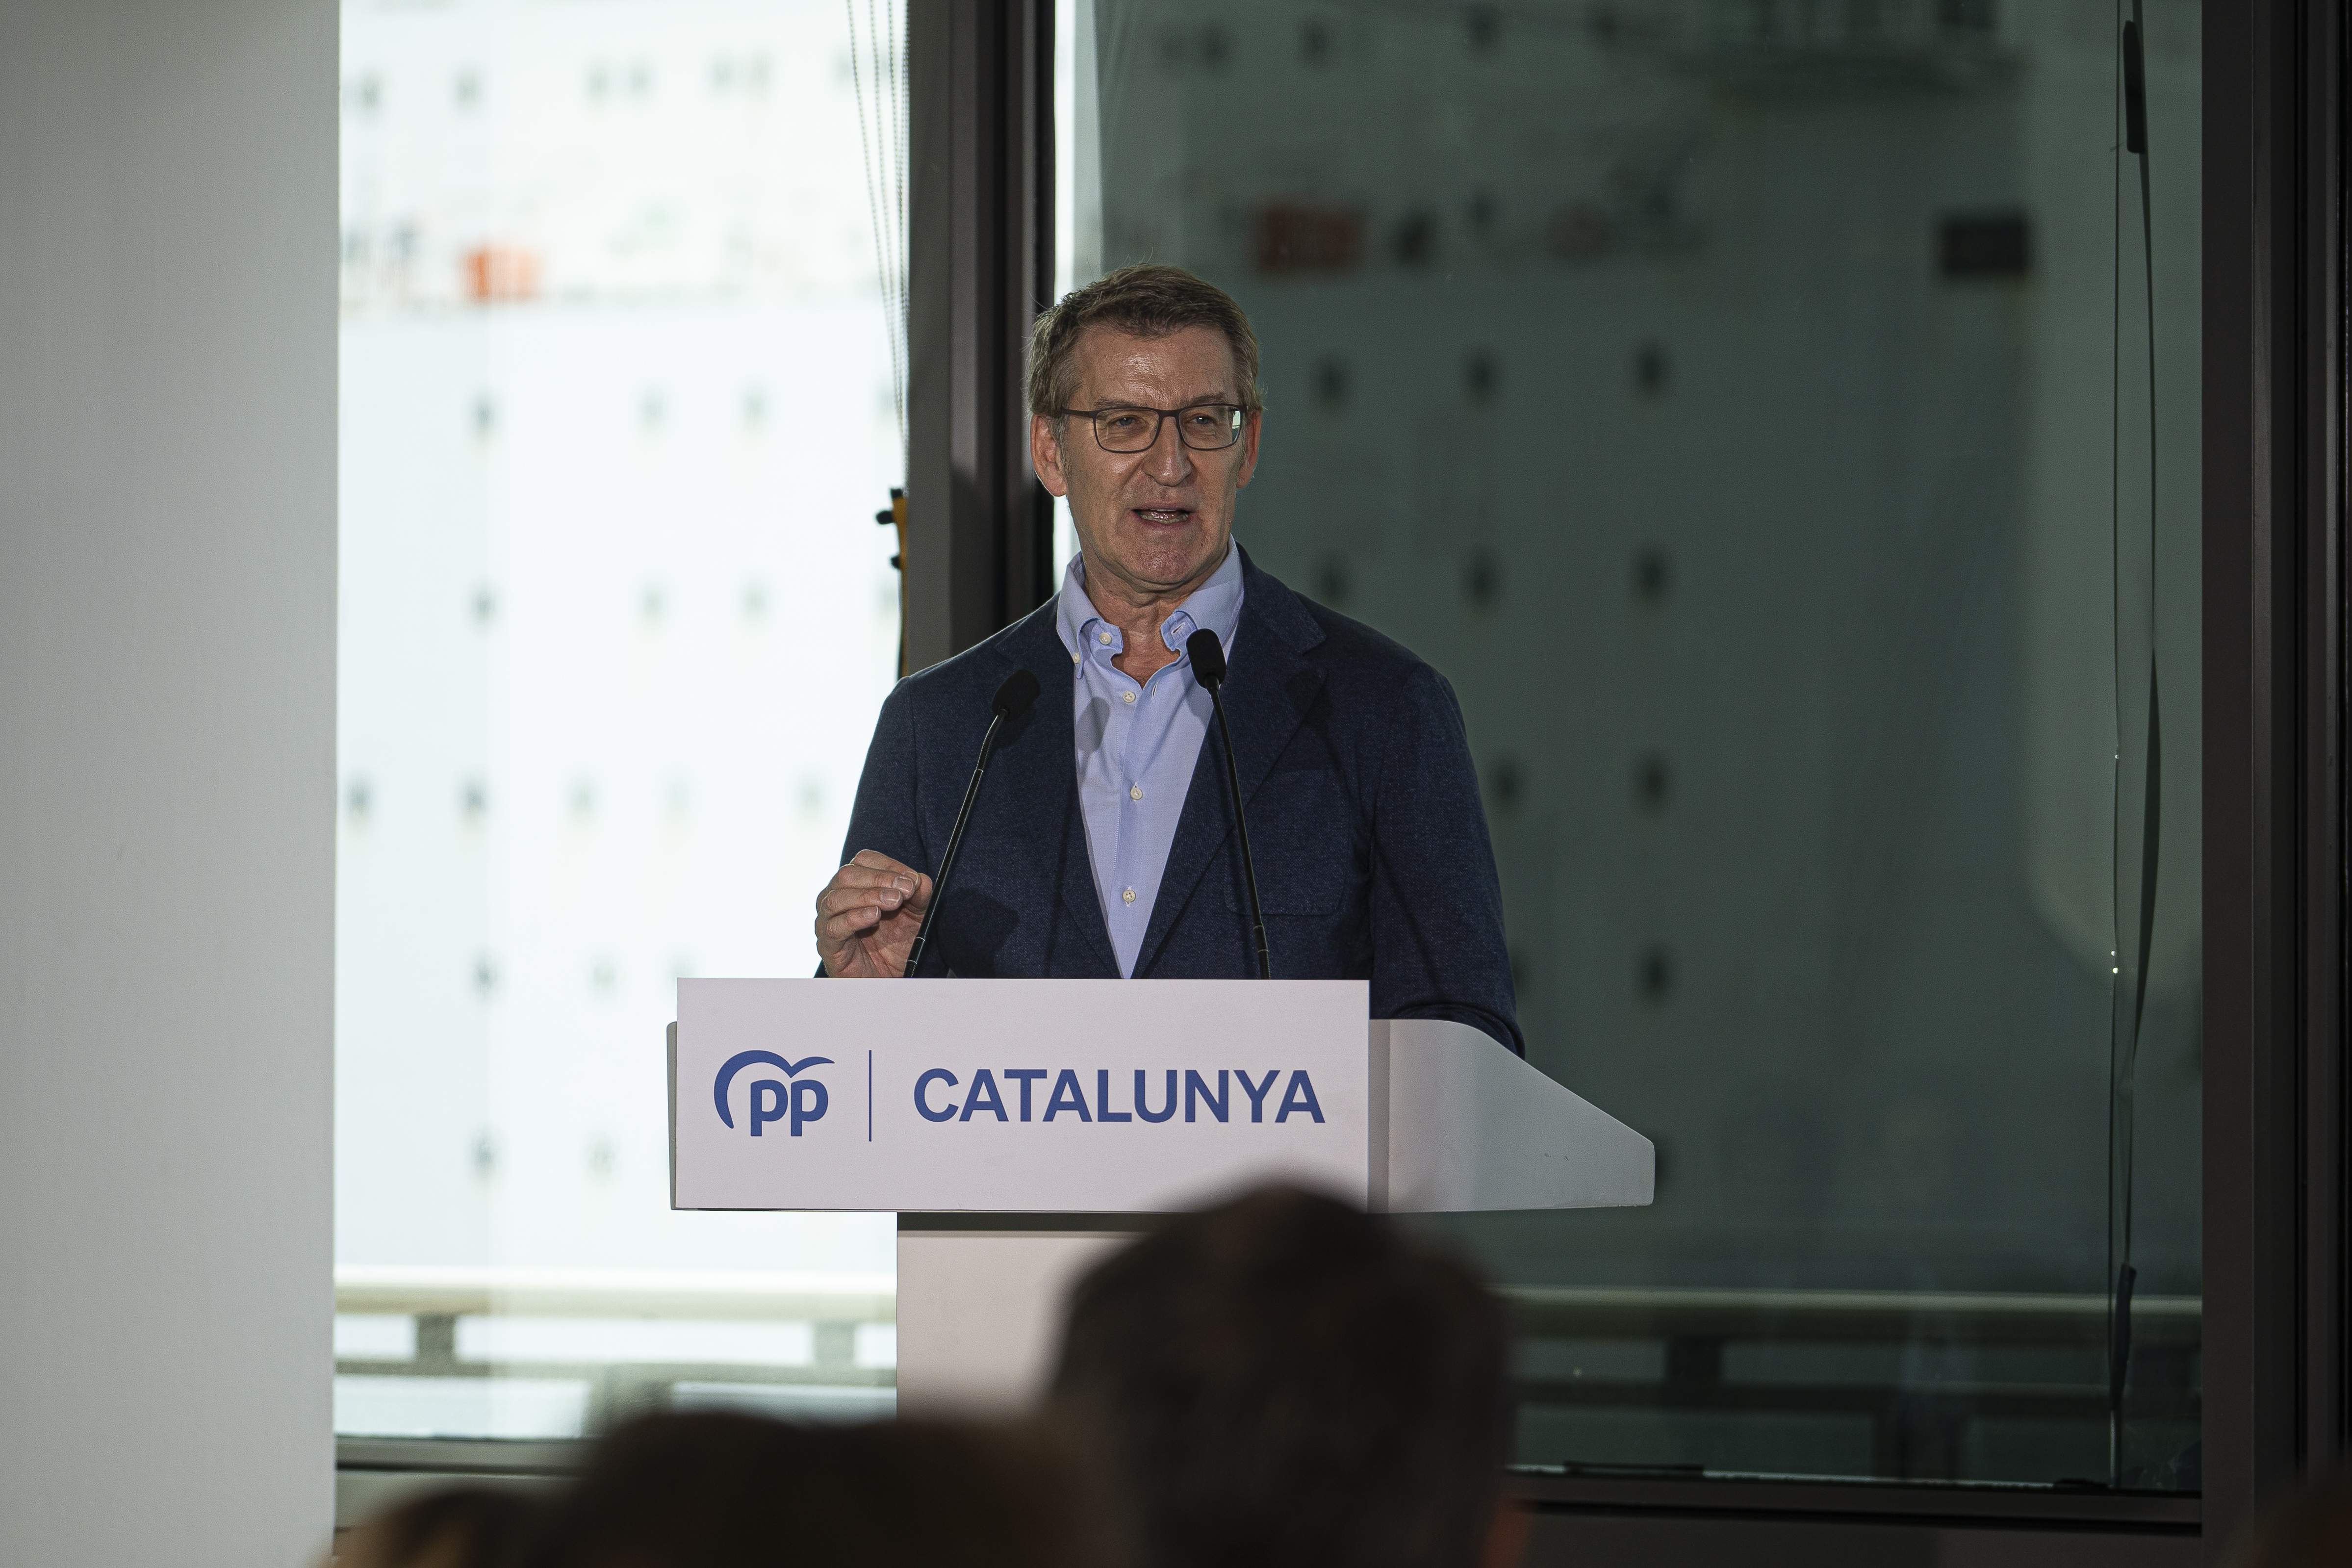 Feijóo quiere replicar el modelo de Galicia en Catalunya: "Está blindado ante chantajes"